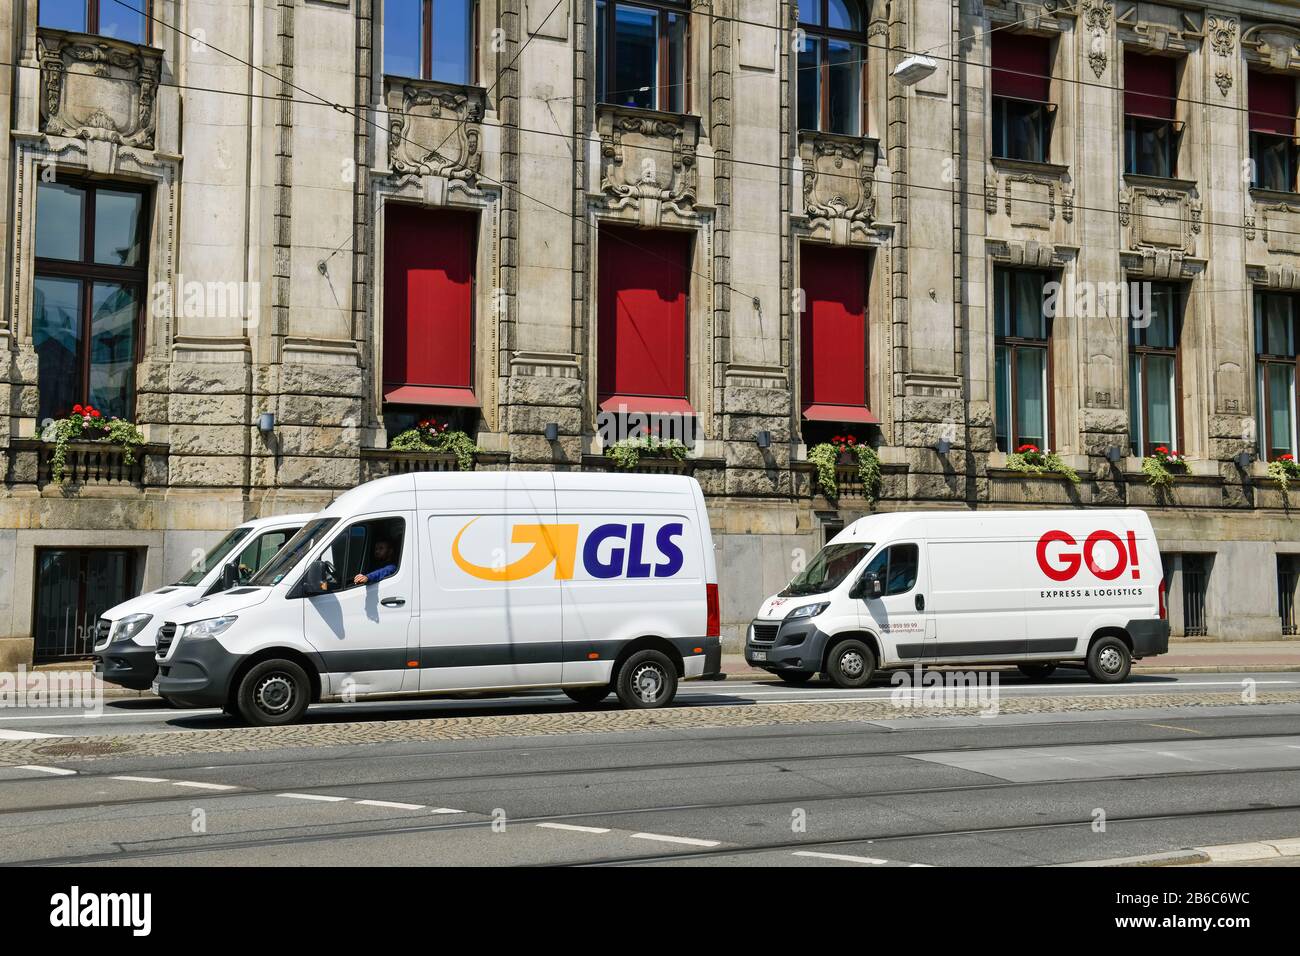 GLS Lieferwagen und GO!, Am Brill, Brema, Deutschland Foto Stock